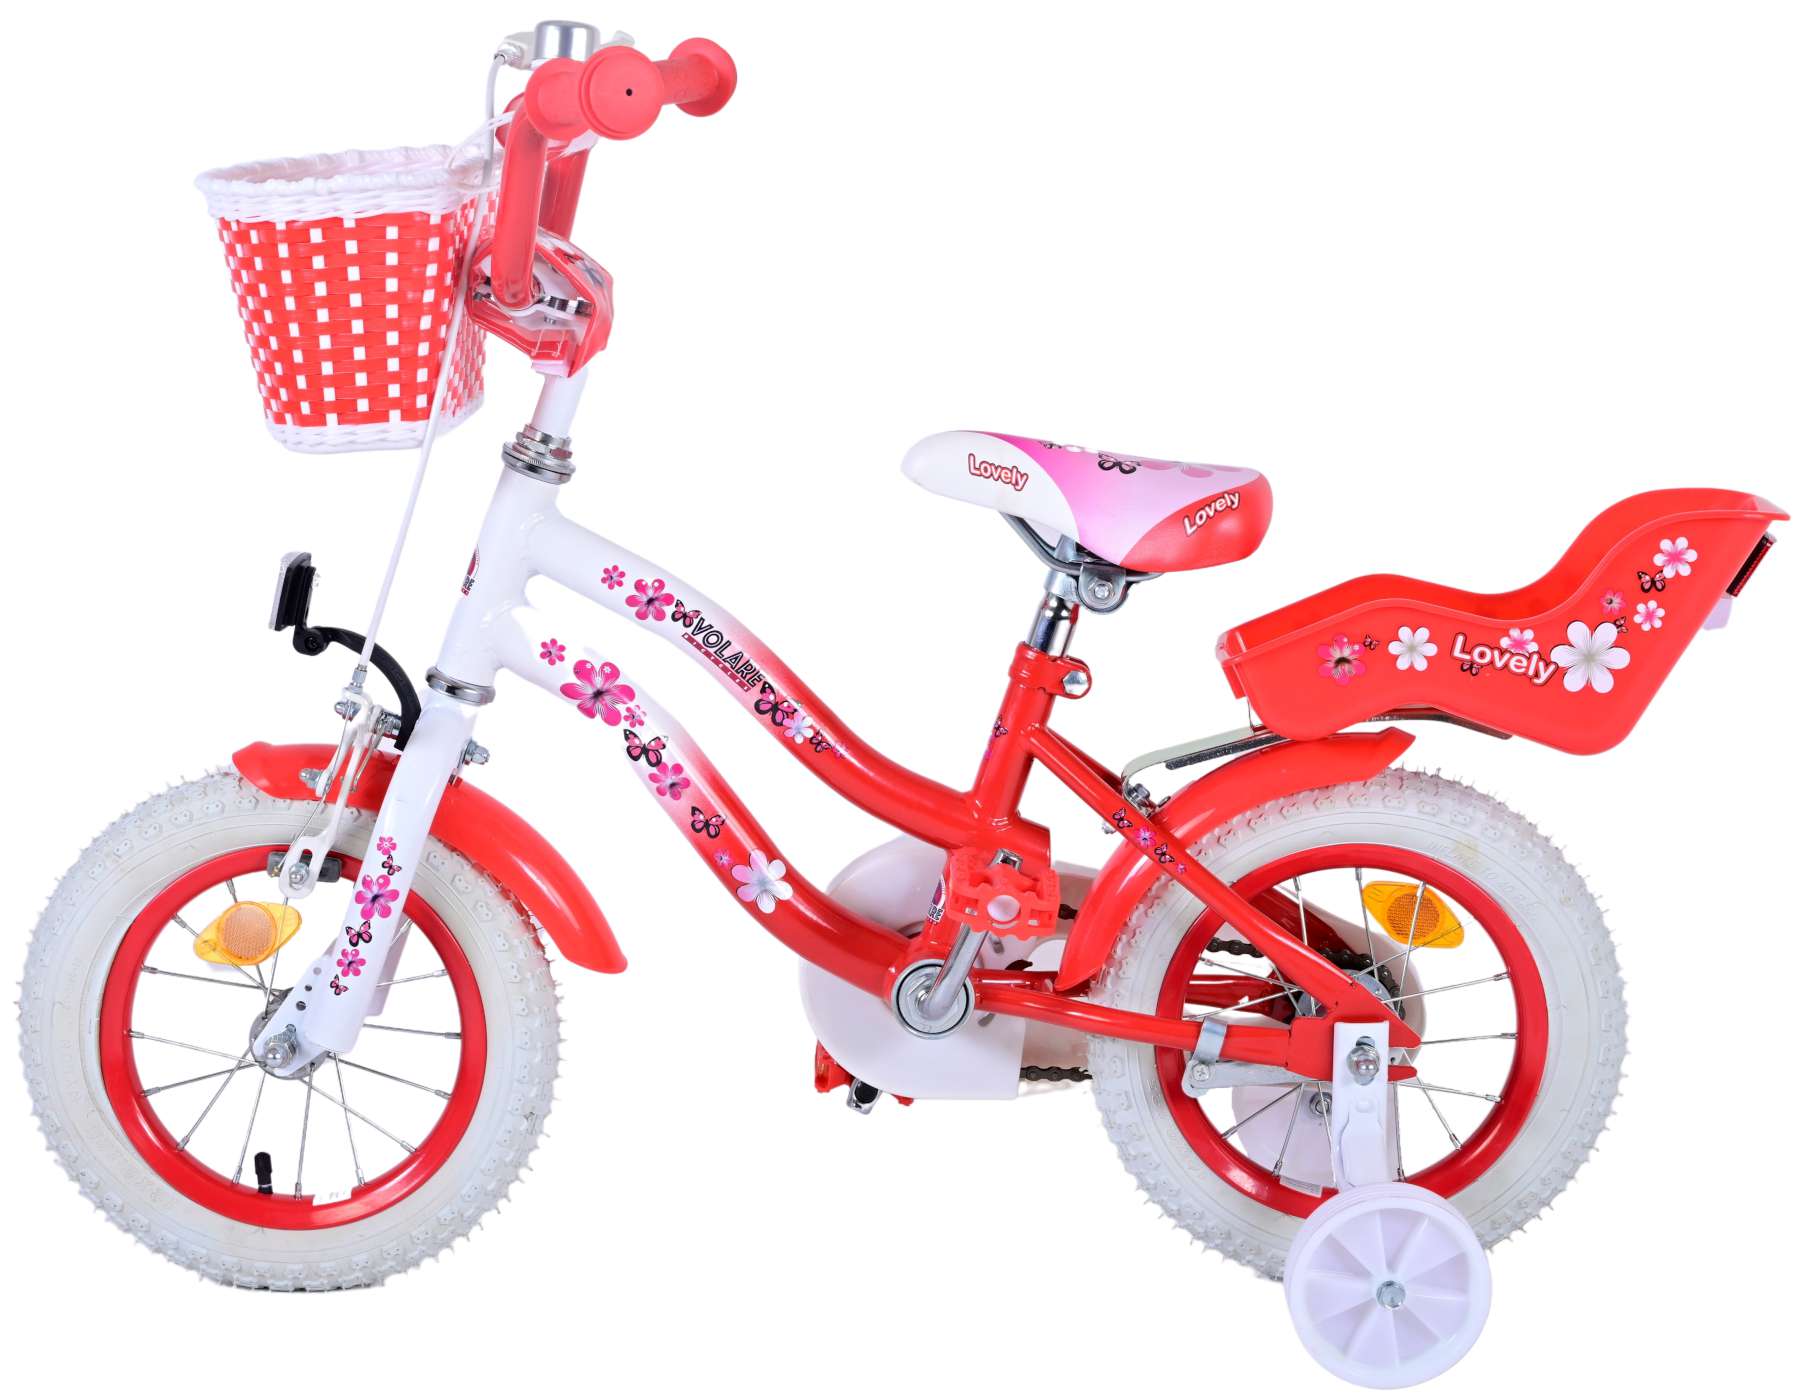 Vélo d'enfant Volare Lovely - Filles - 12 pouces - Rouge - 95% assemblé